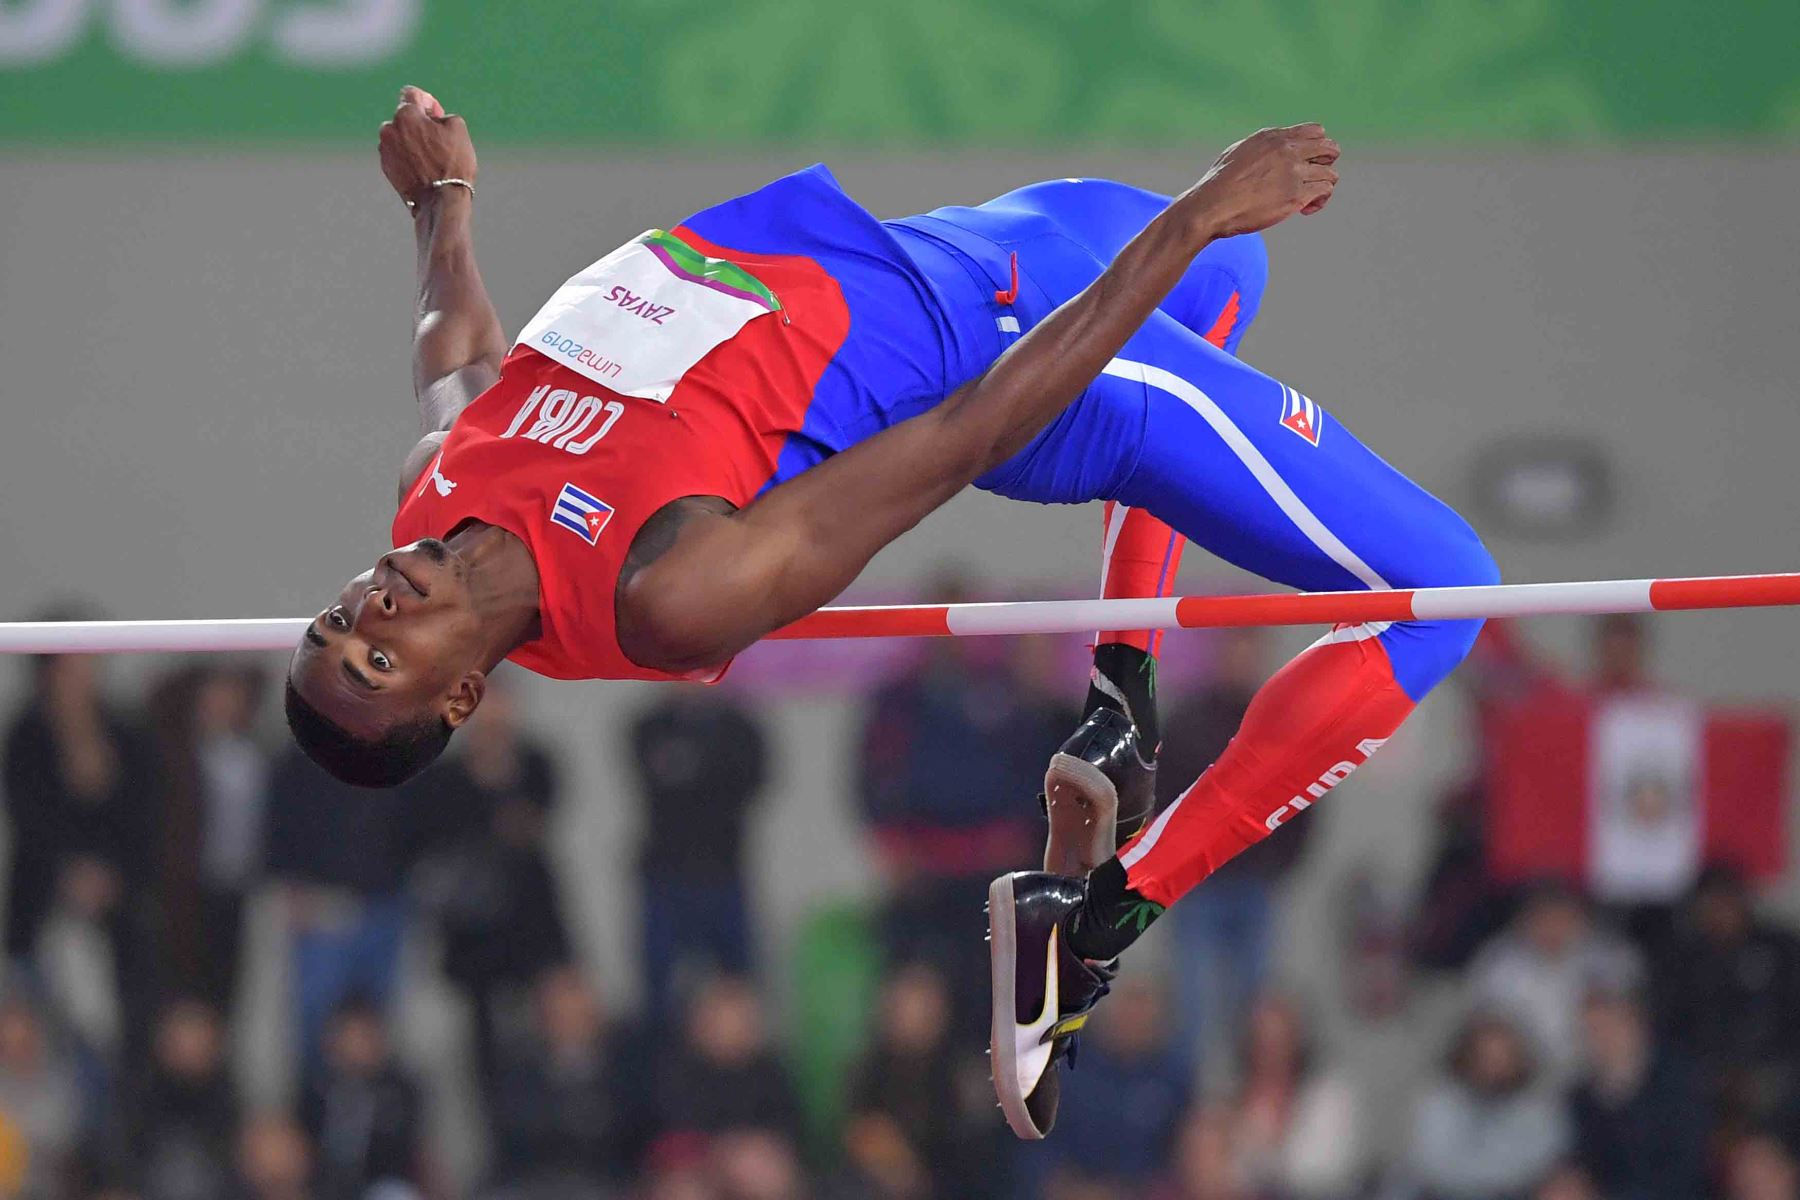 El cubano Luis Zayas compite en la final de salto de altura masculino de atletismo durante los Juegos Panamericanos de Lima 2019. AFP